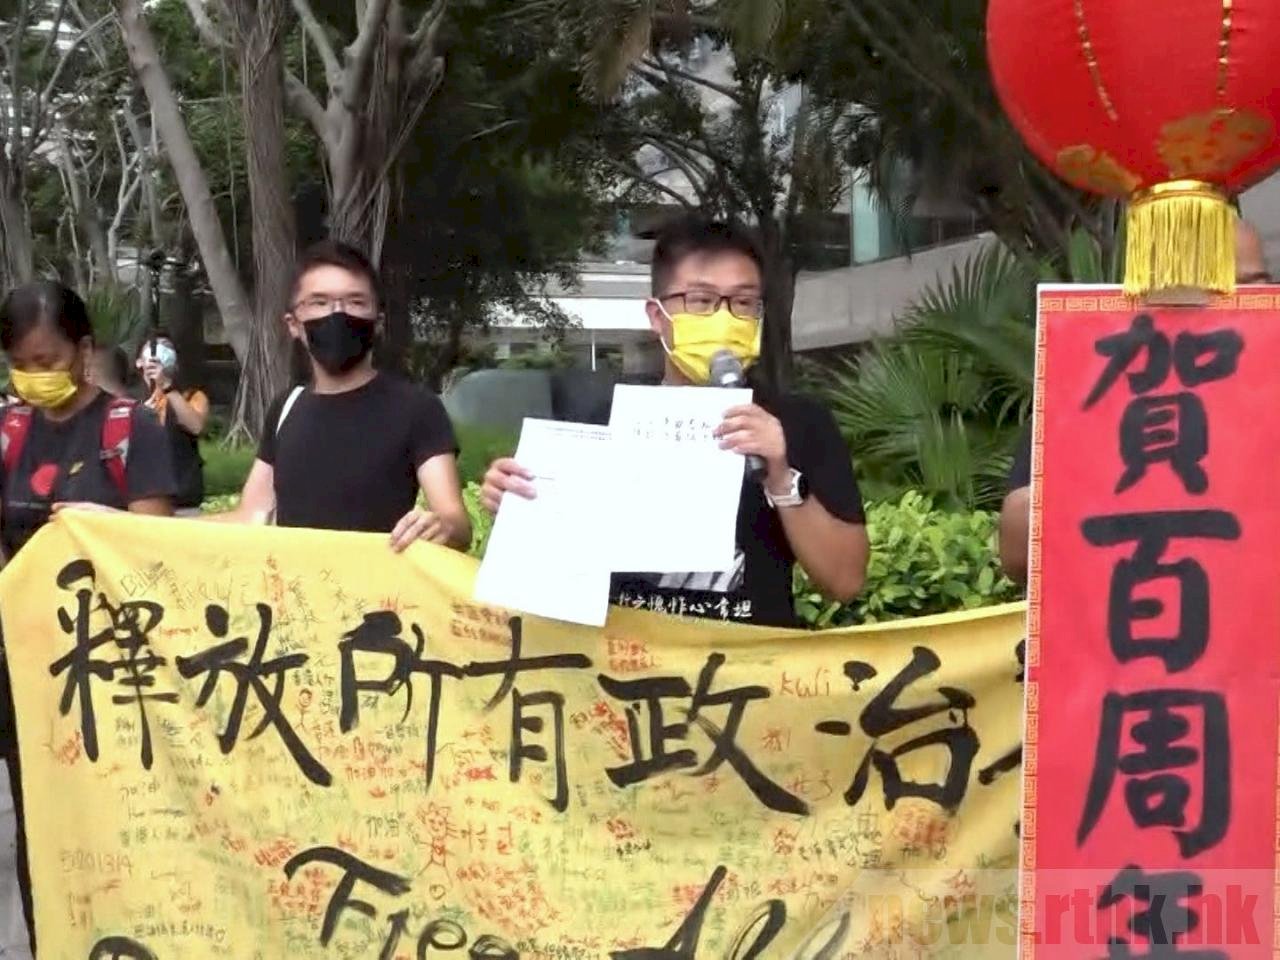 香港特區成立24周年慶典 社民連要求釋放政治犯